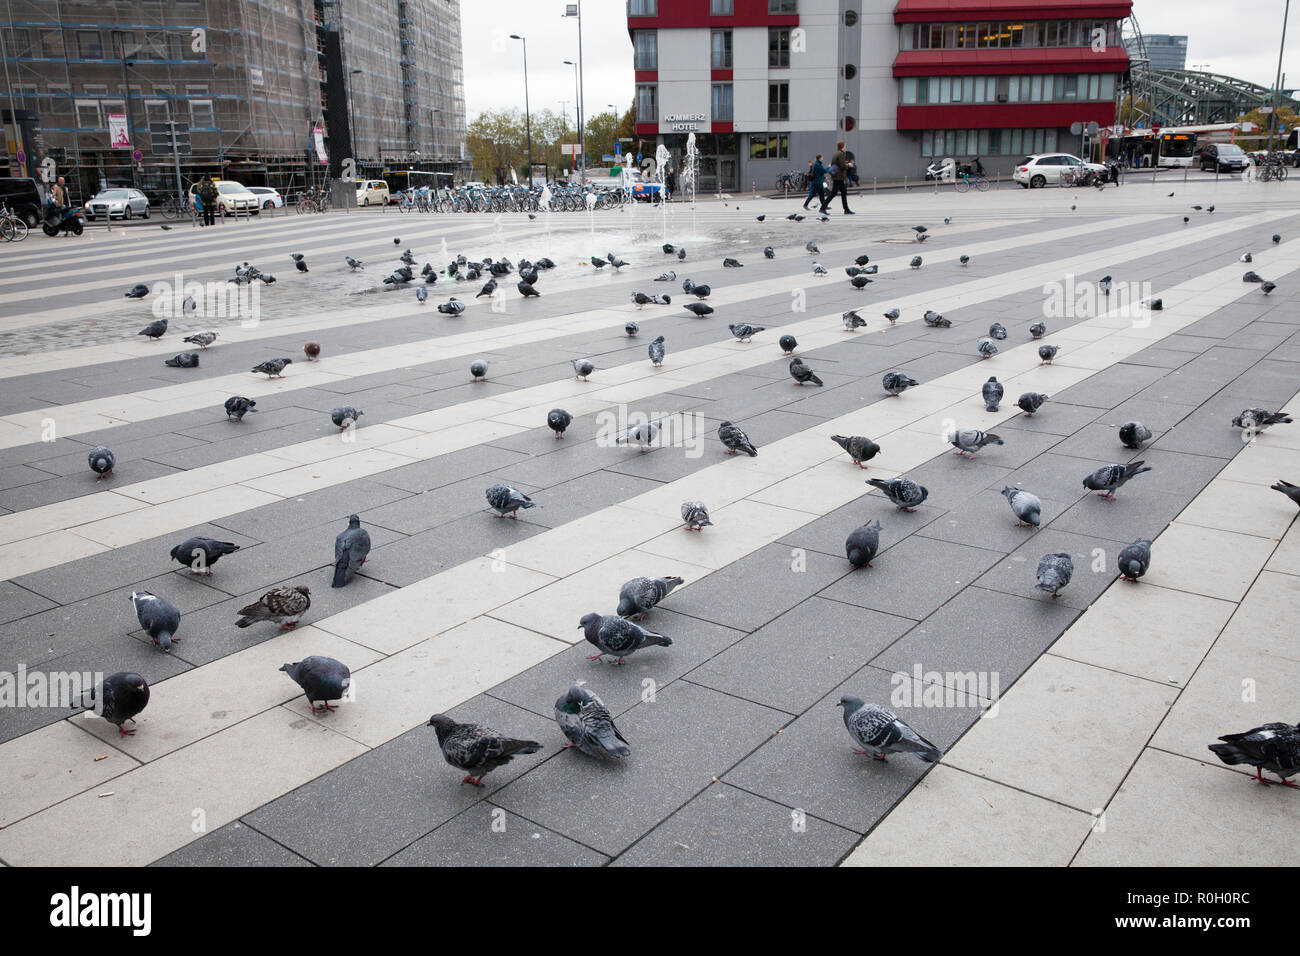 pigeons on the Breslauer square at the main station, Cologne, Germany.  Tauben auf dem Breslauer Platz am Hauptbahnhof, Koeln, Deutschland. Stock Photo